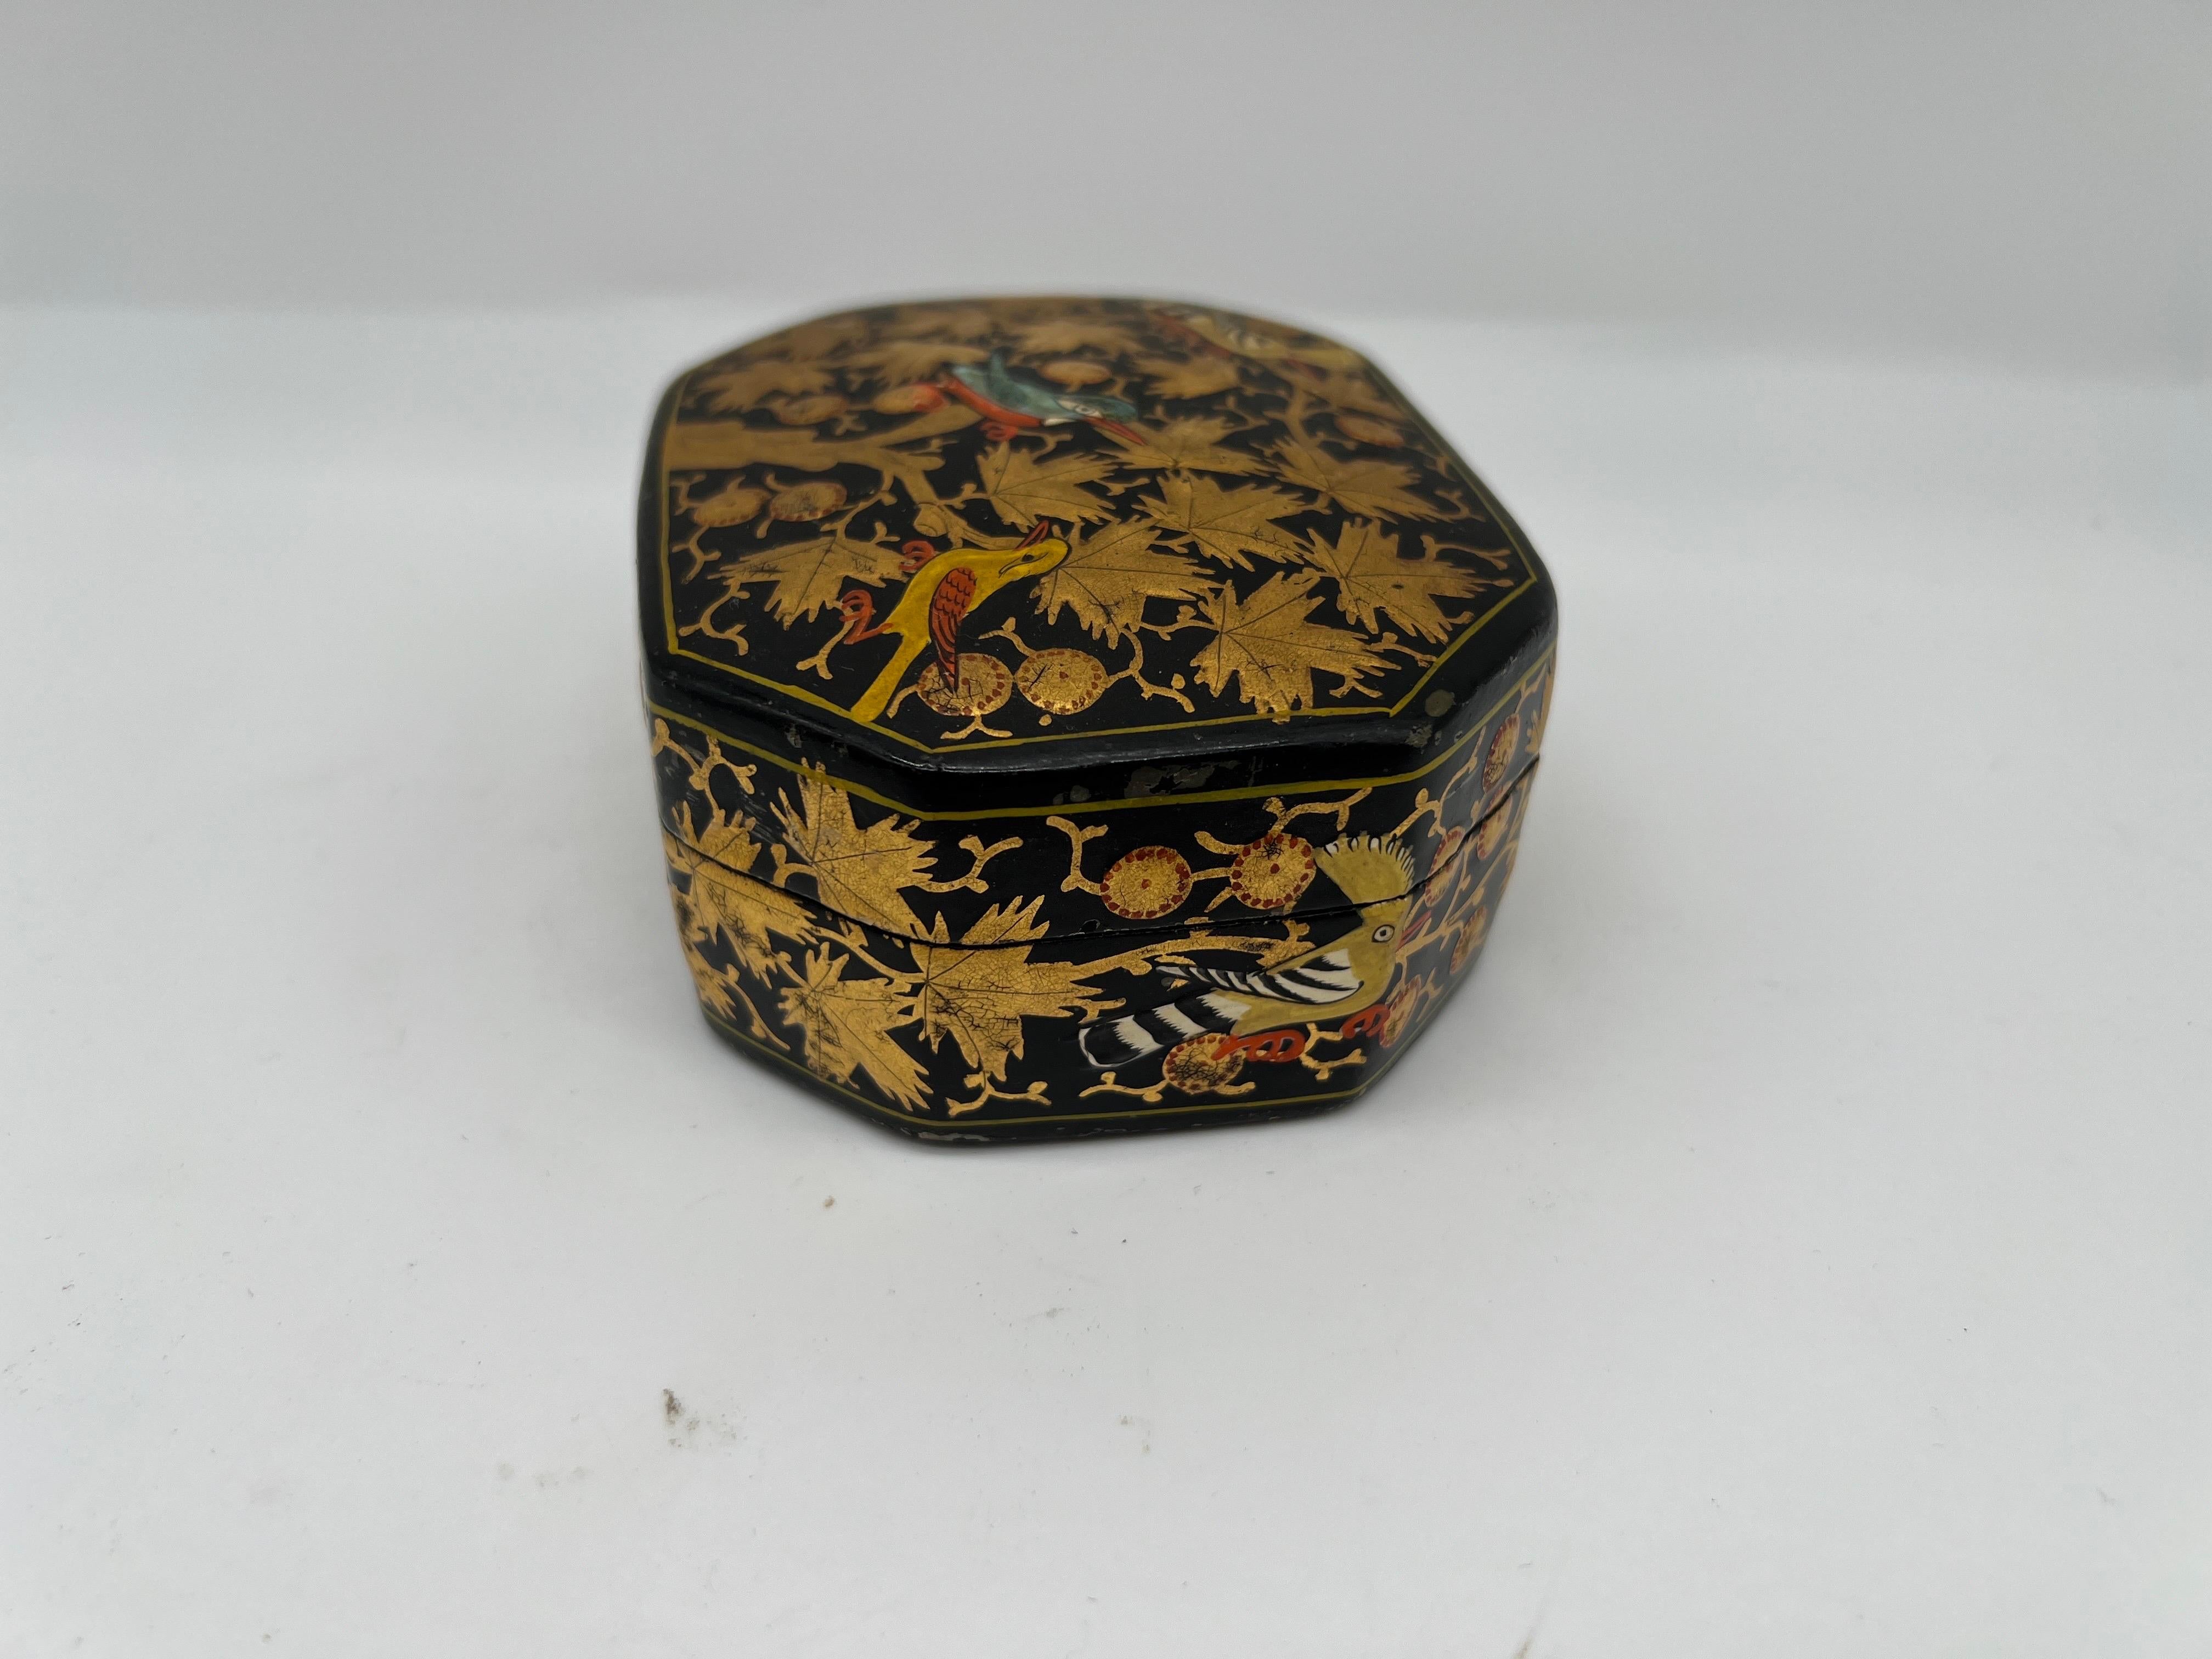 Kaschmiri, Anfang des 20. Jahrhunderts.
Eine antike schwarze Lackdose mit schwerem vergoldetem Blumendekor und mehrfarbigen Vögeln auf der Oberfläche. 